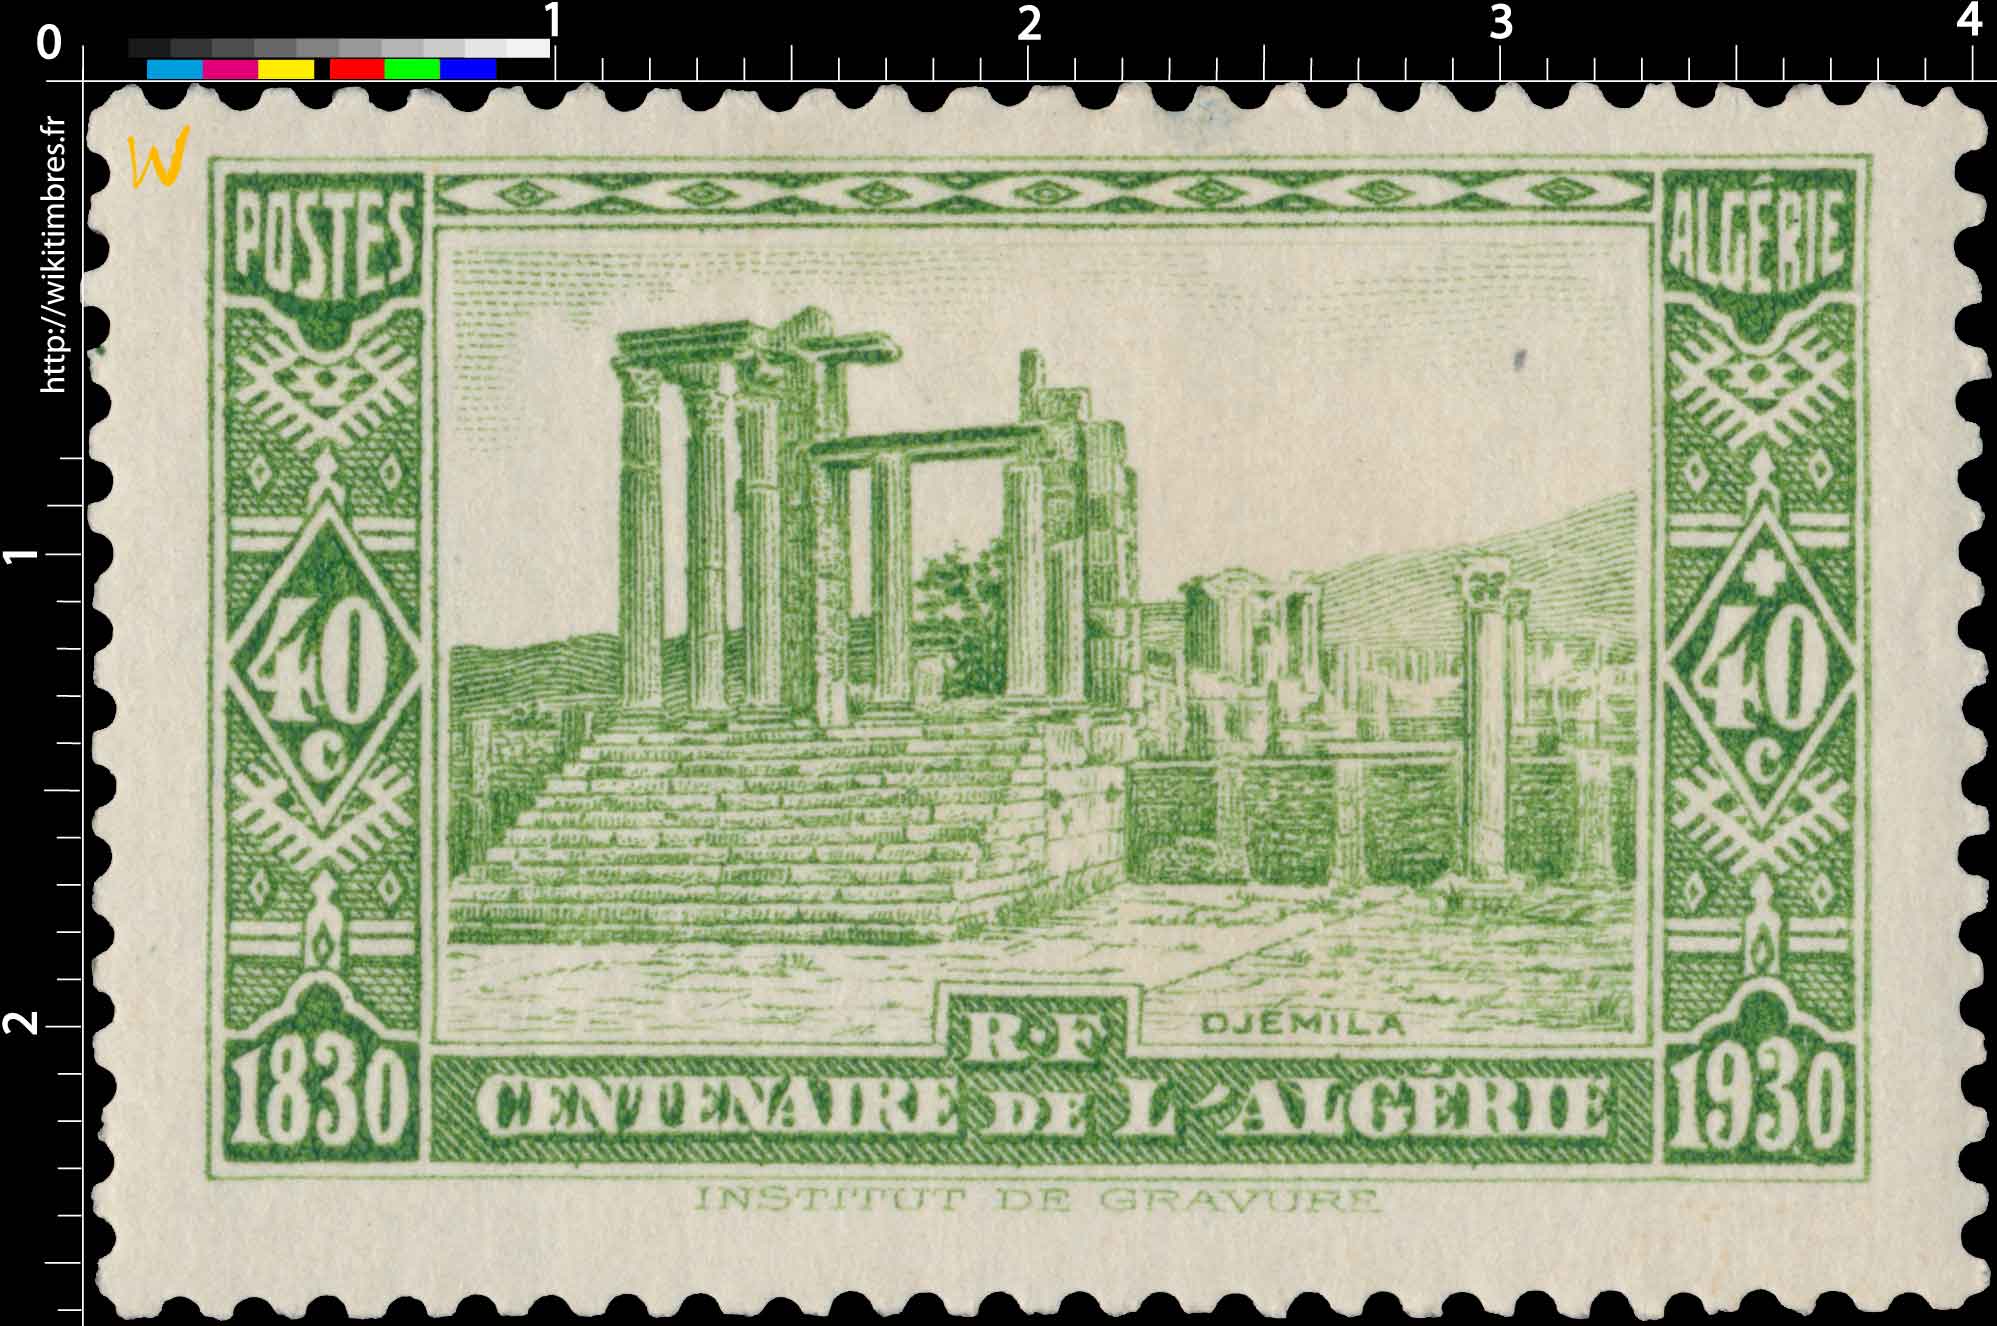 Algérie - Djemila - Centenaire de l'Algérie 1830 - 1930